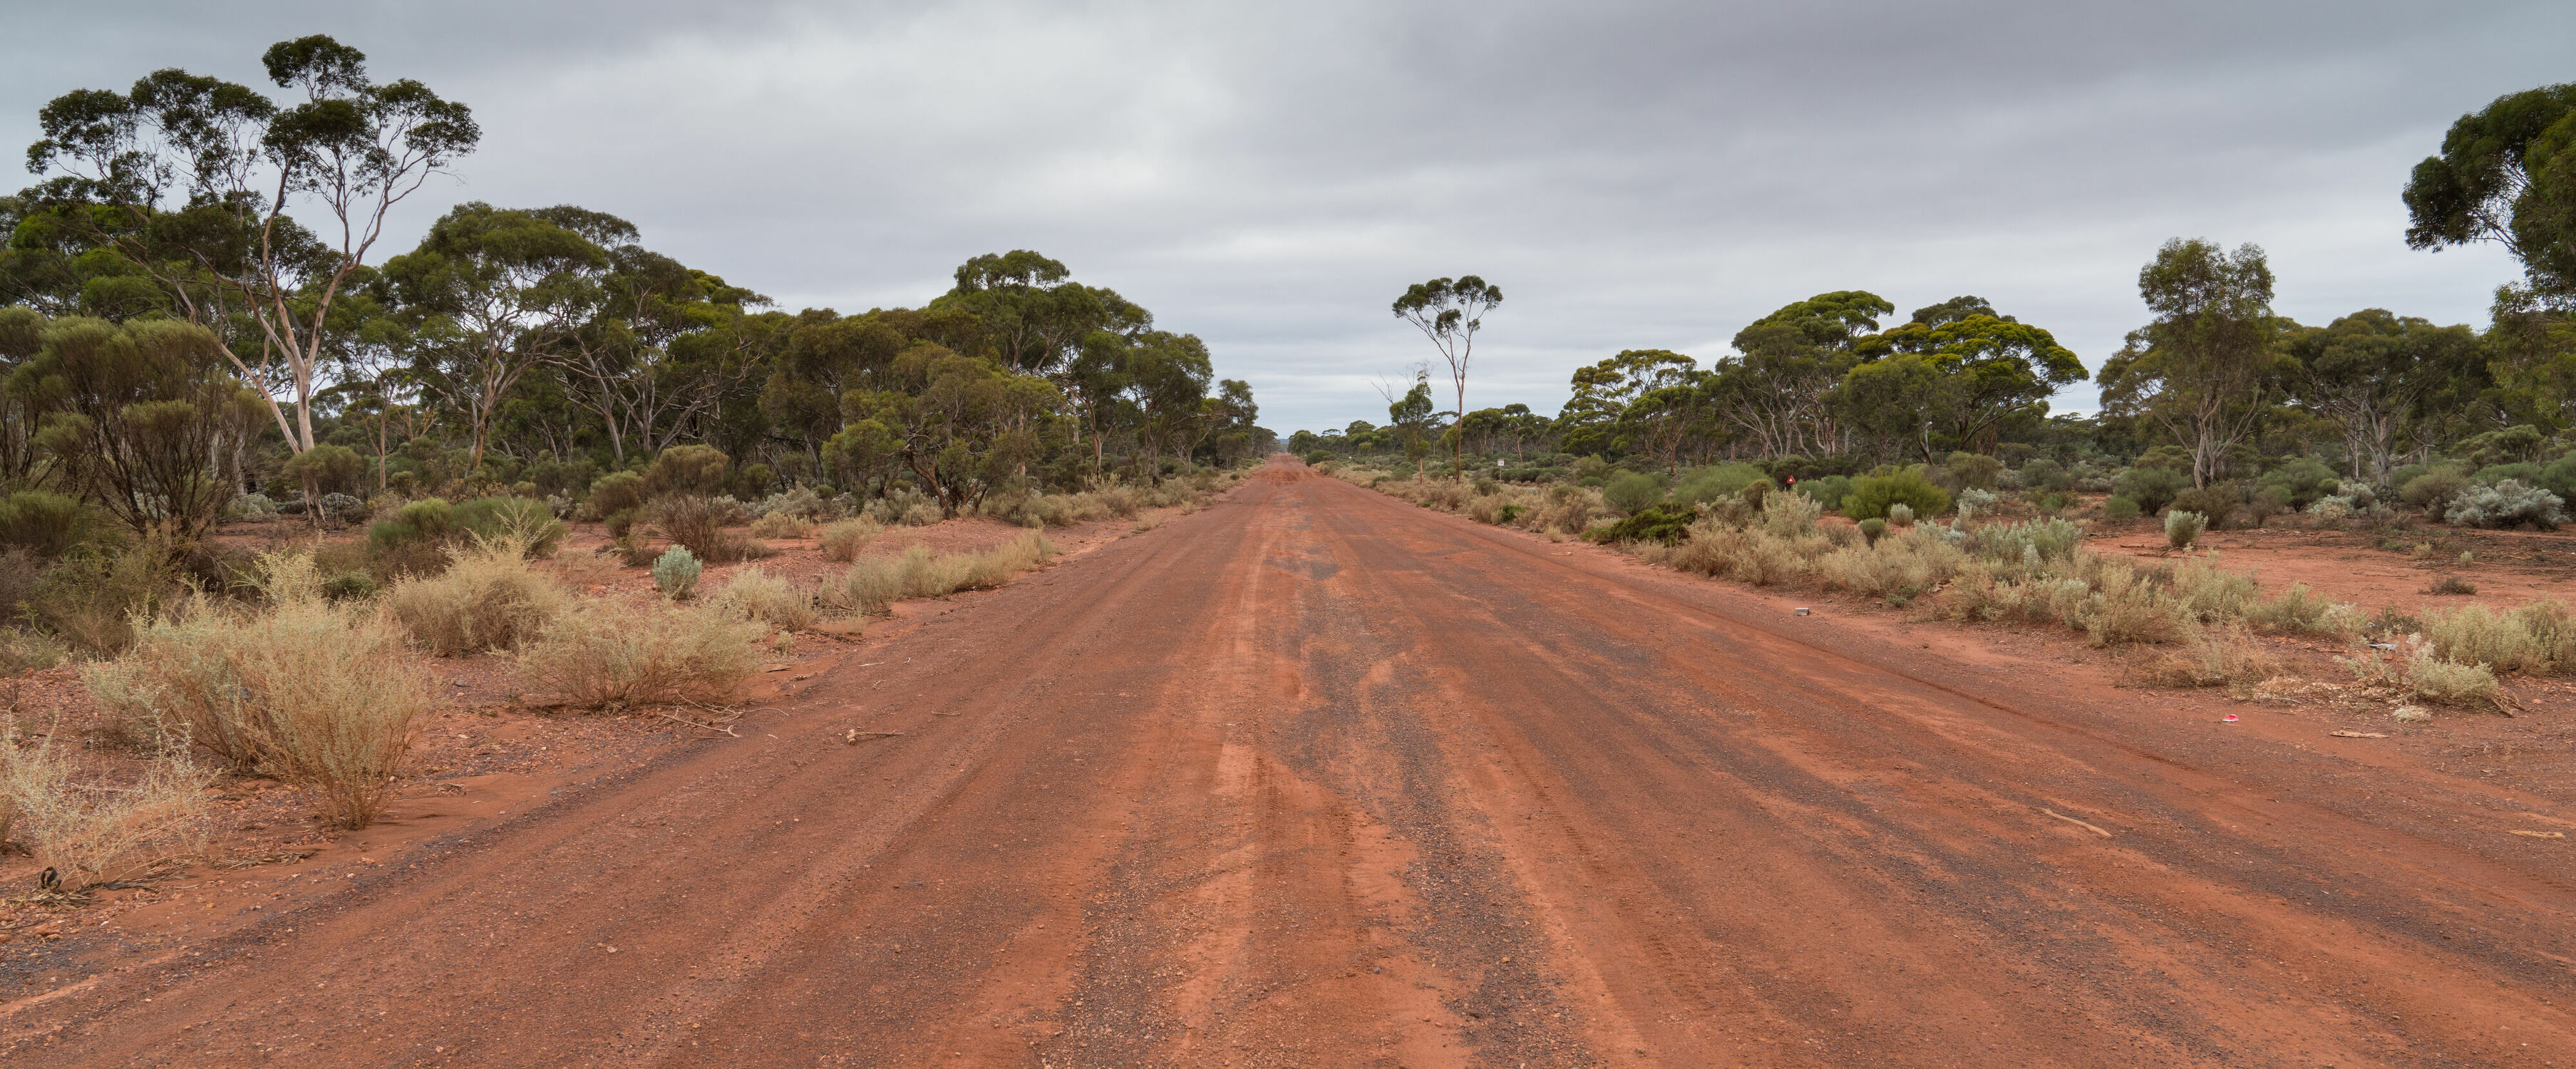 Bild mit Natur, Landschaften, Straßen und Wege, Panorama, Landschaften & Natur, Reisen, Australien, Western Australia, outback